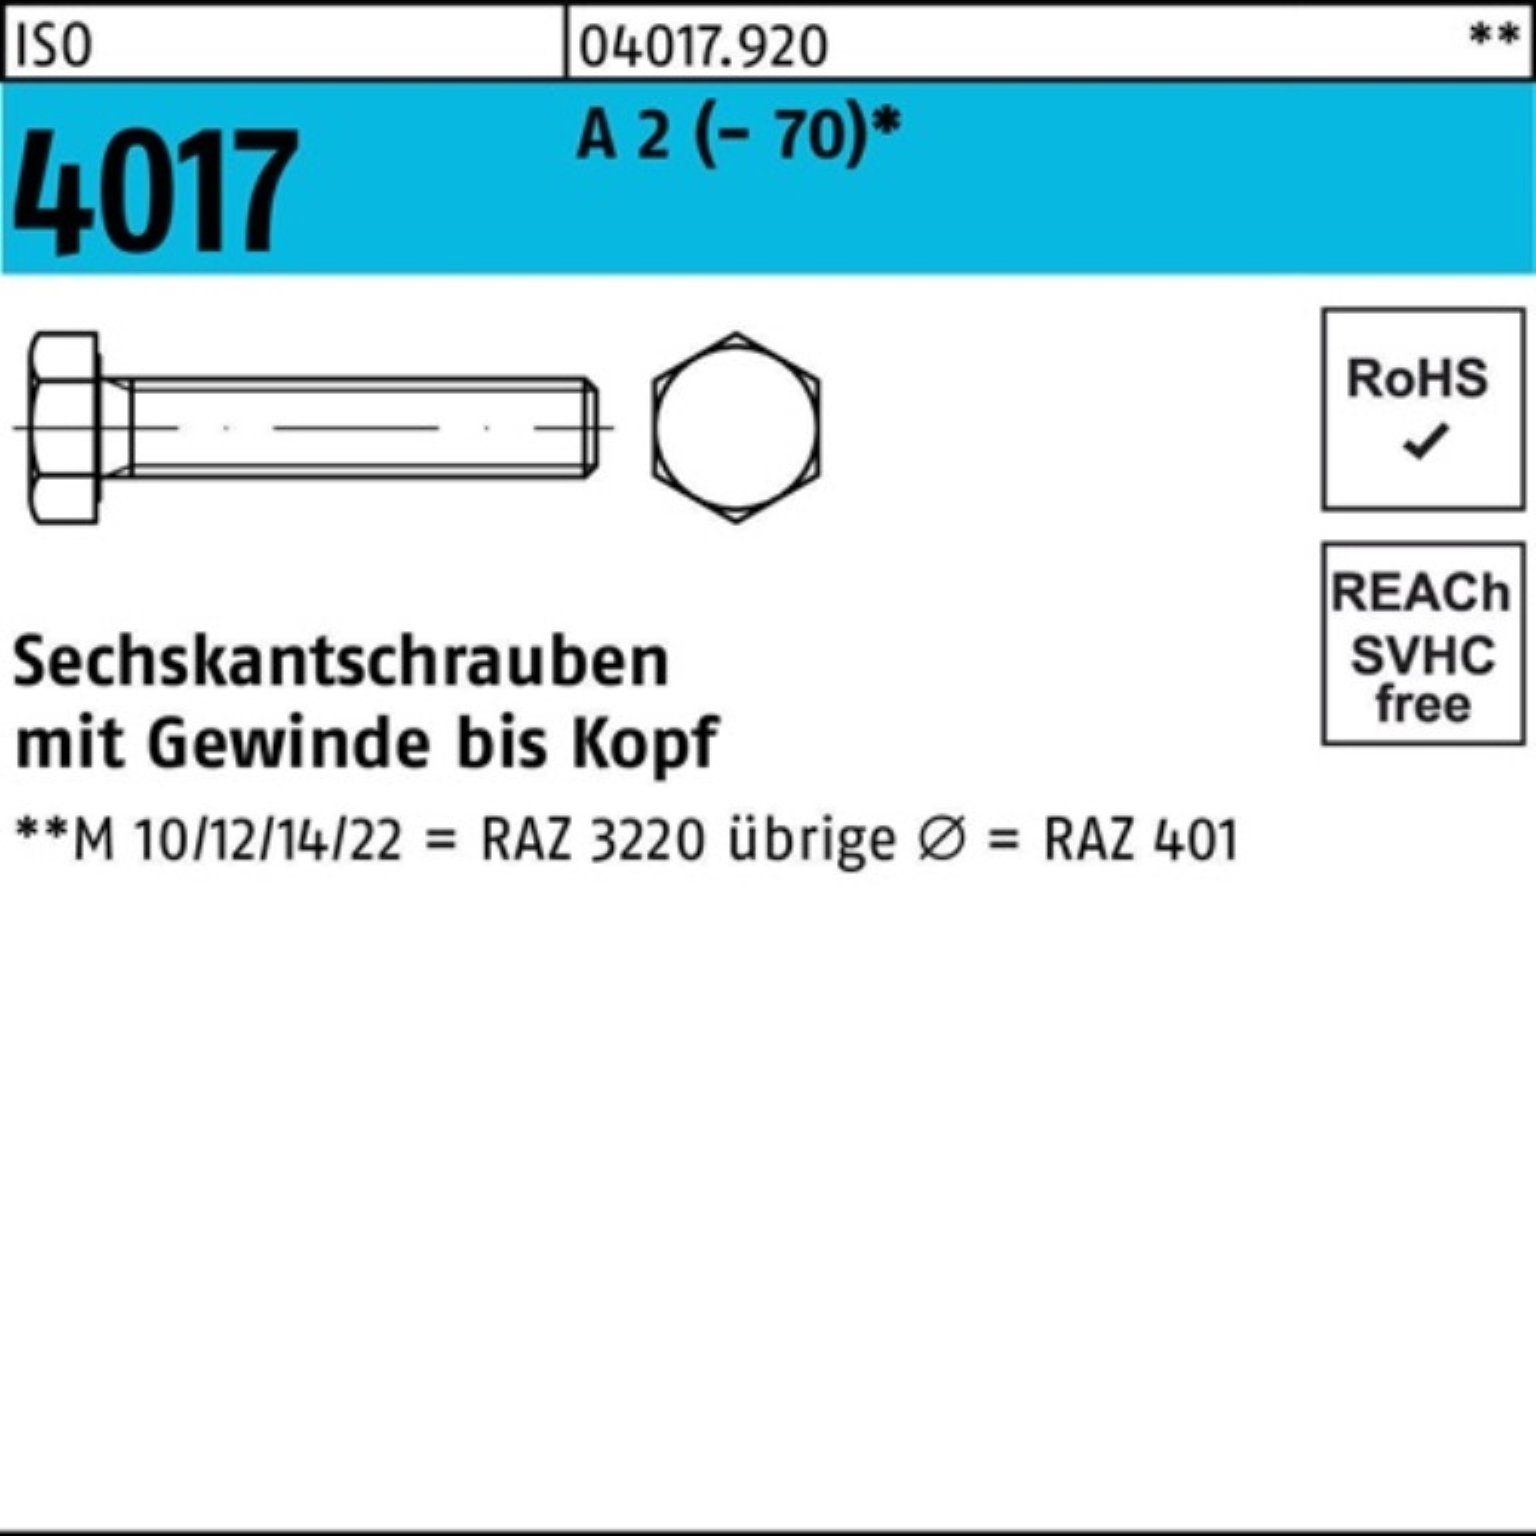 Bufab Sechskantschraube 100er Pack Sechskantschraube ISO 4017 VG M10x 130 A 2 (70) 1 Stück | Schrauben